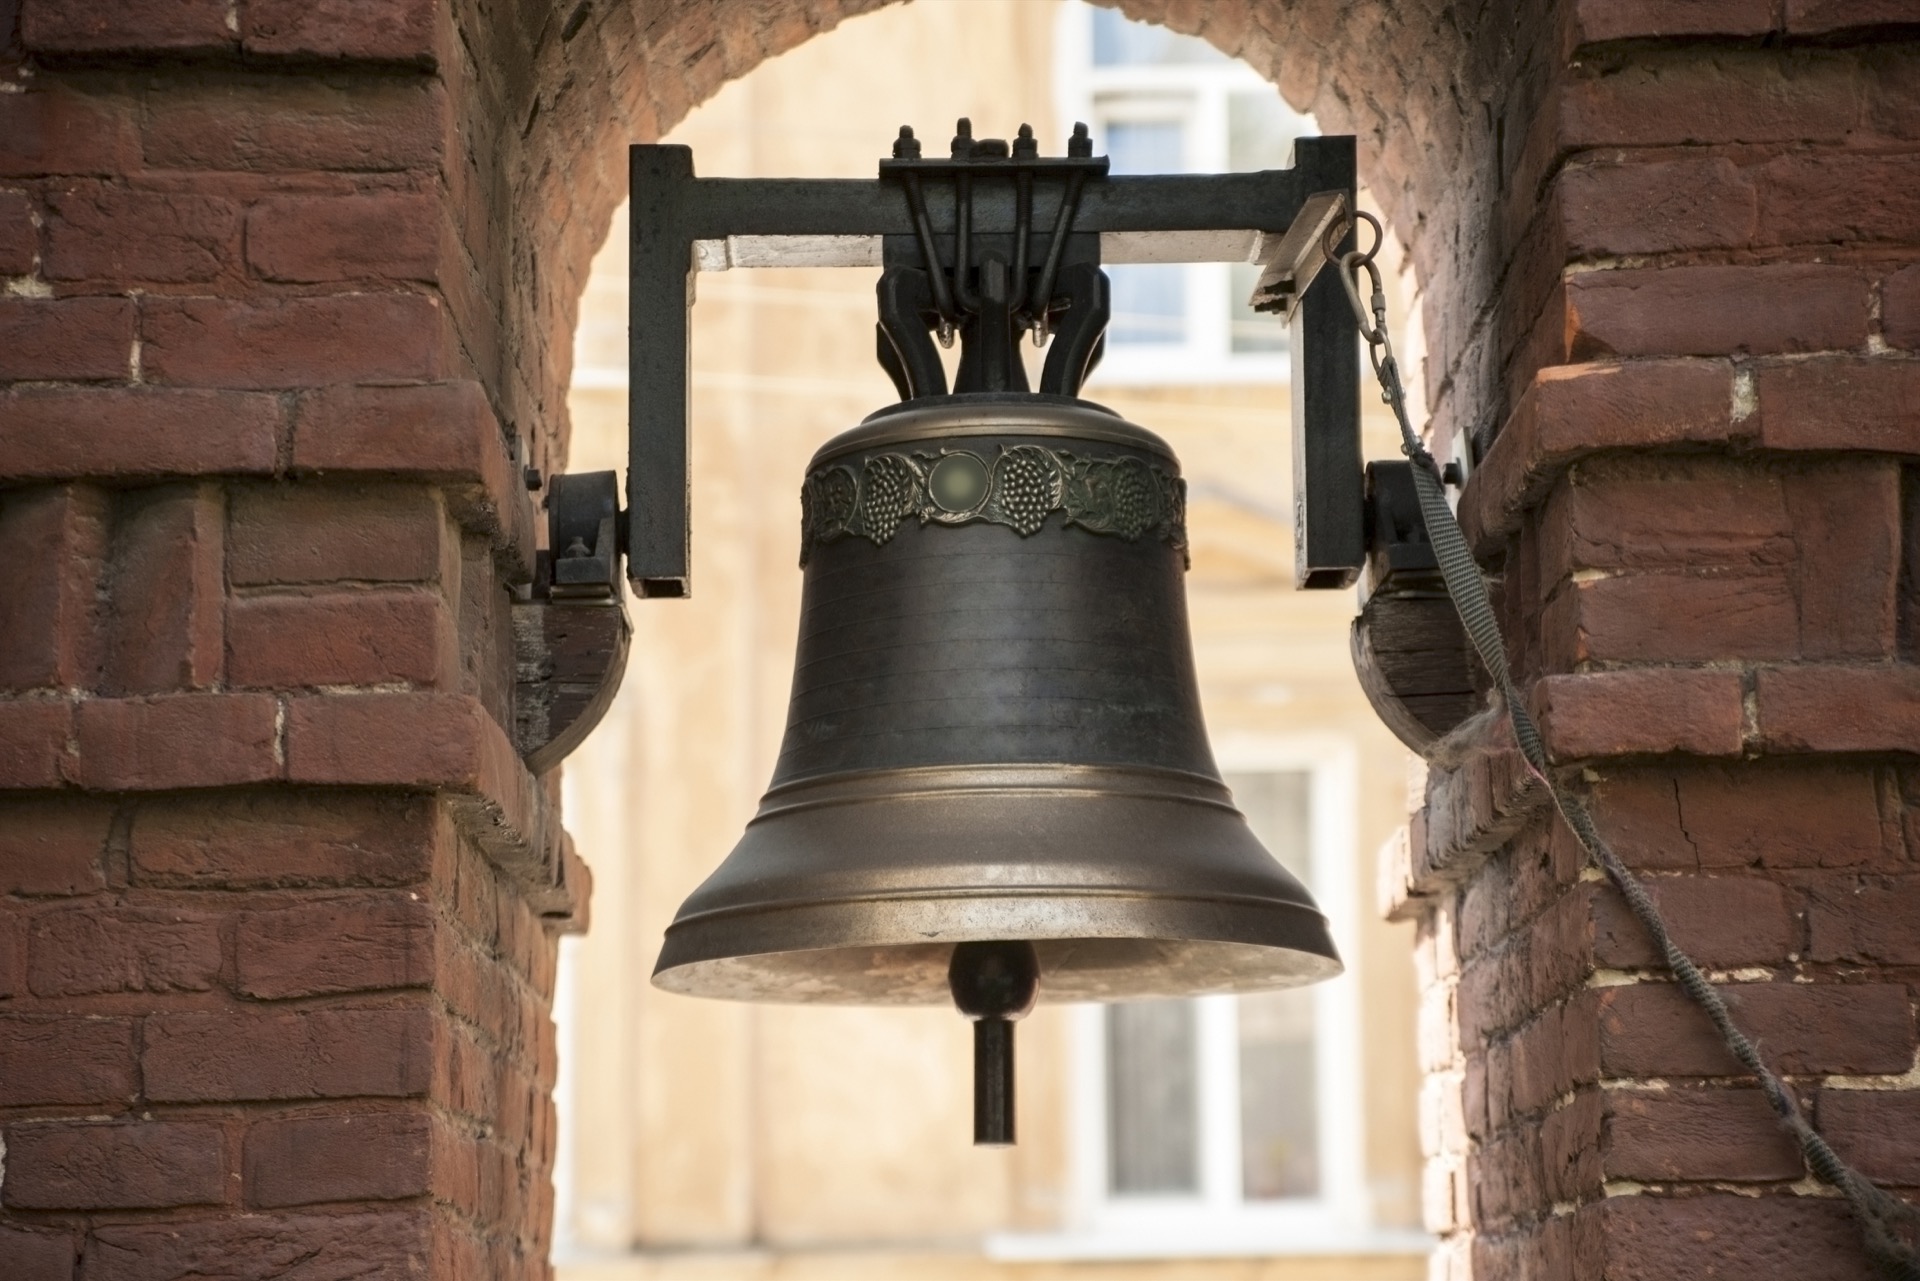 Old bronze bell in between brick